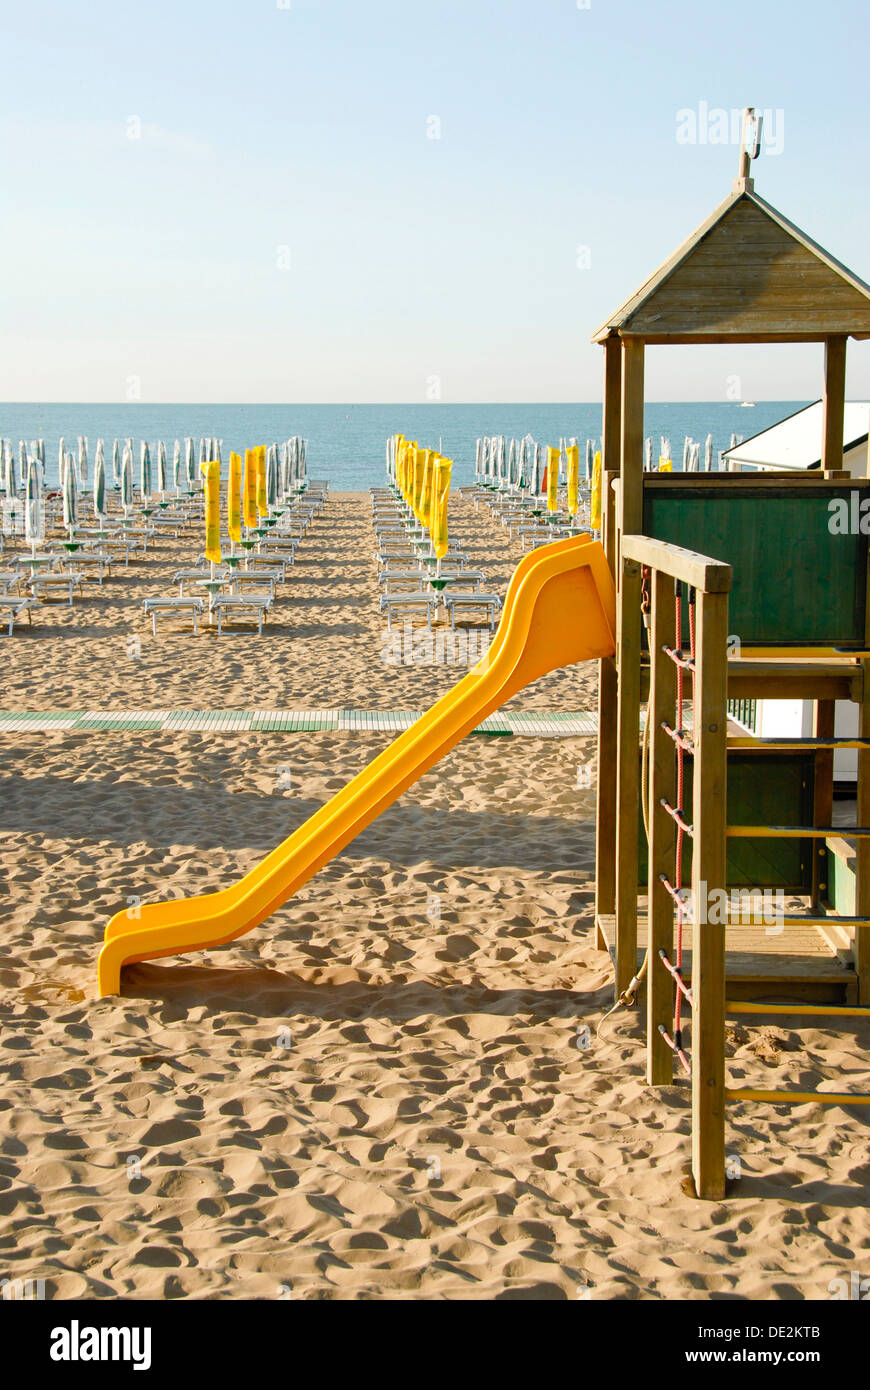 Début de saison, aire de jeux, toboggan, fermé des parasols sur la plage de sable, l'Adria, Caorle, Province de Venise, Vénétie, Italie, Europe Banque D'Images